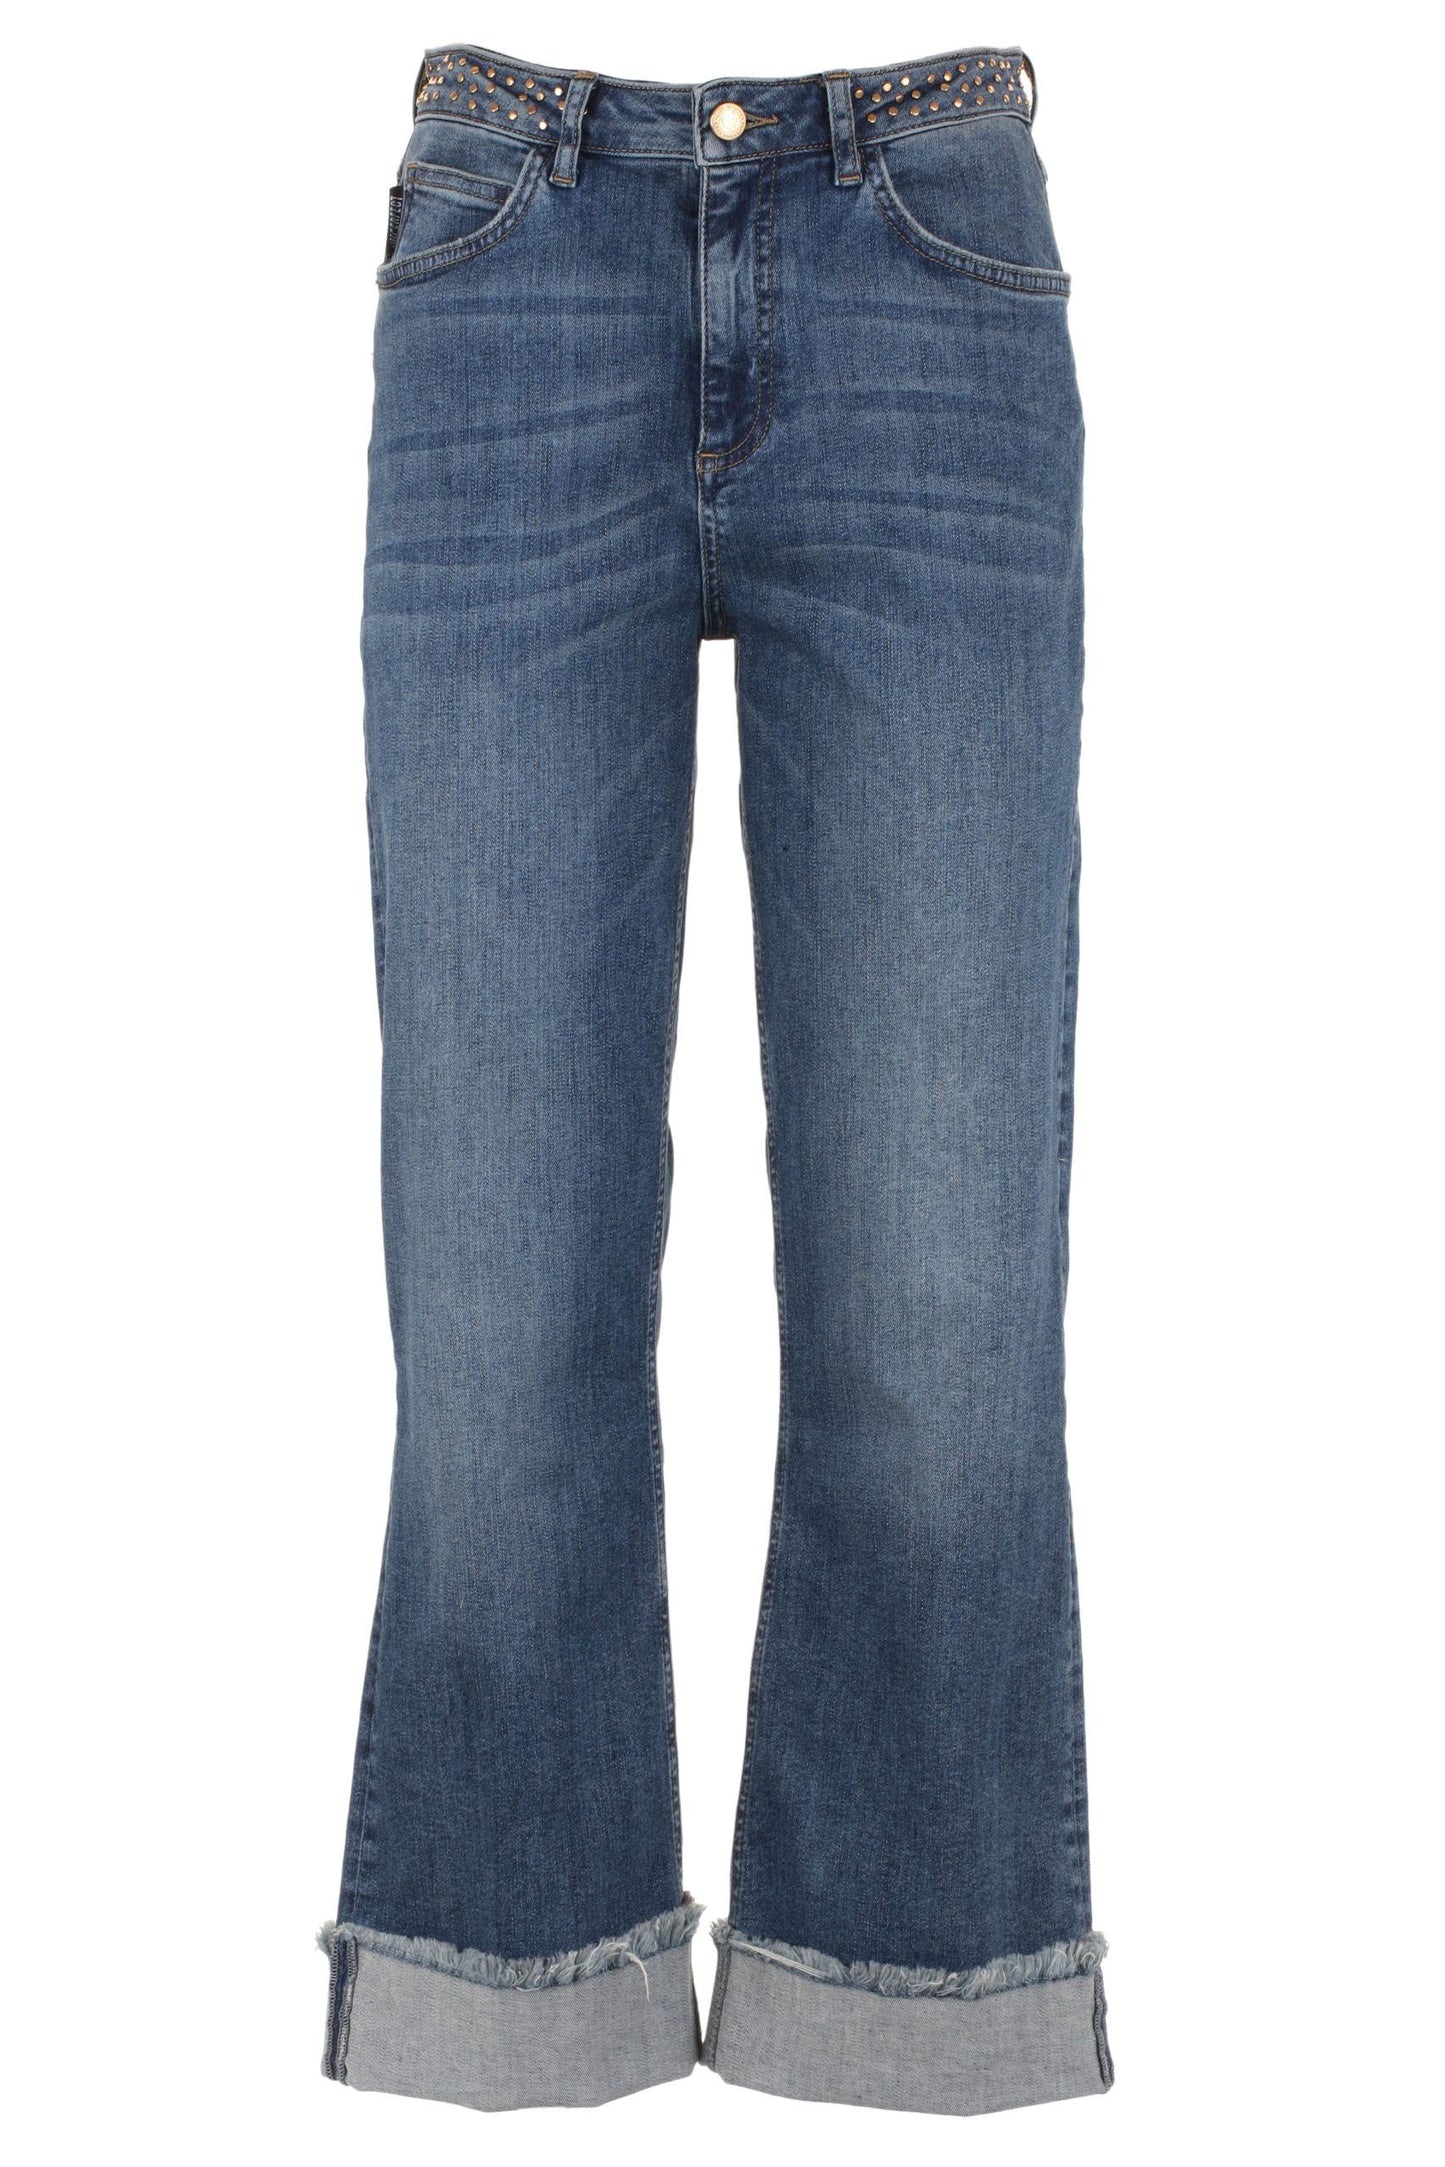 Imperfect Blue Cotton Jeans & Pant